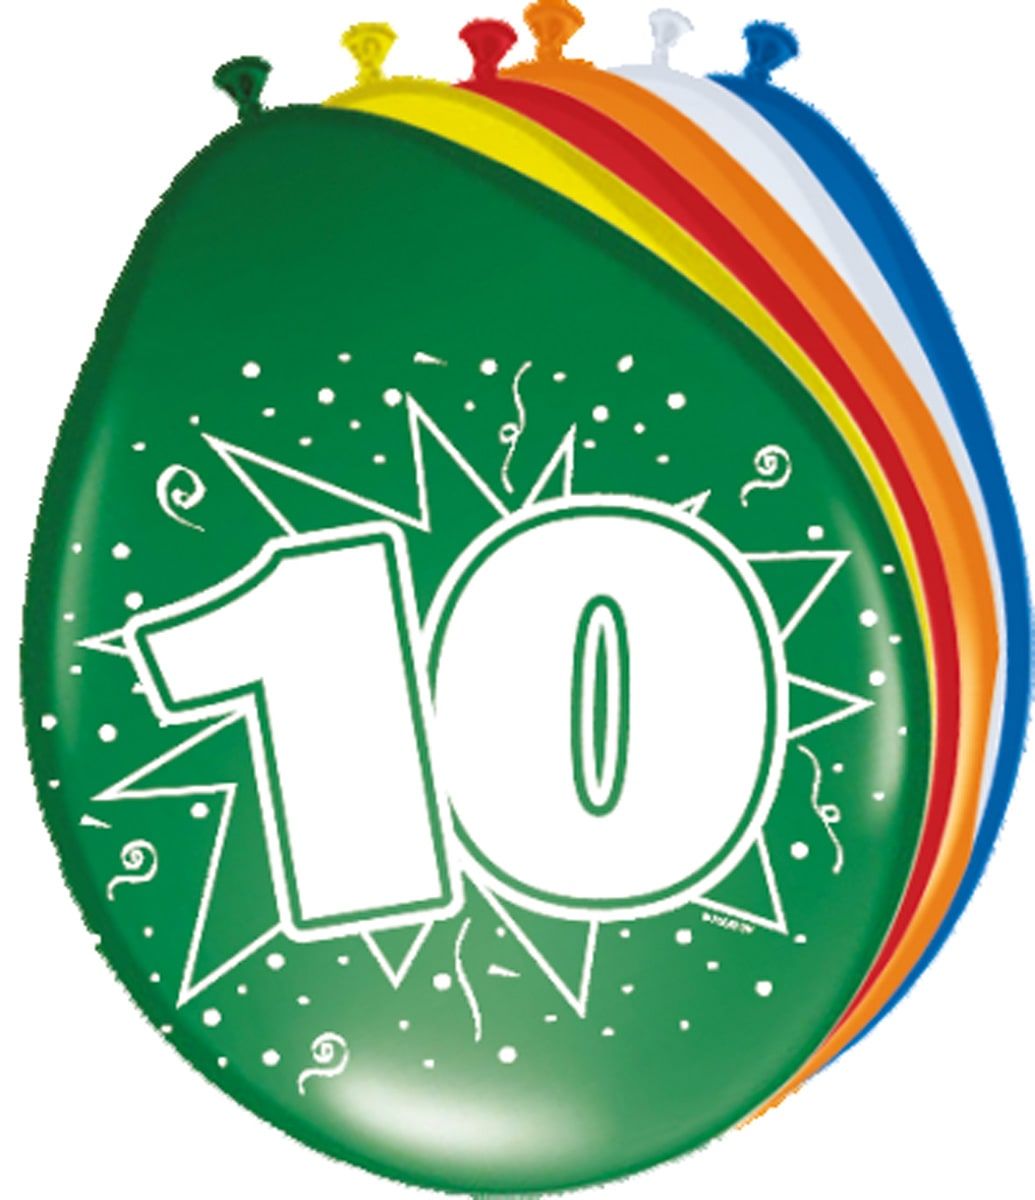 Verjaardag 10 jaar ballonnen 8 stuks